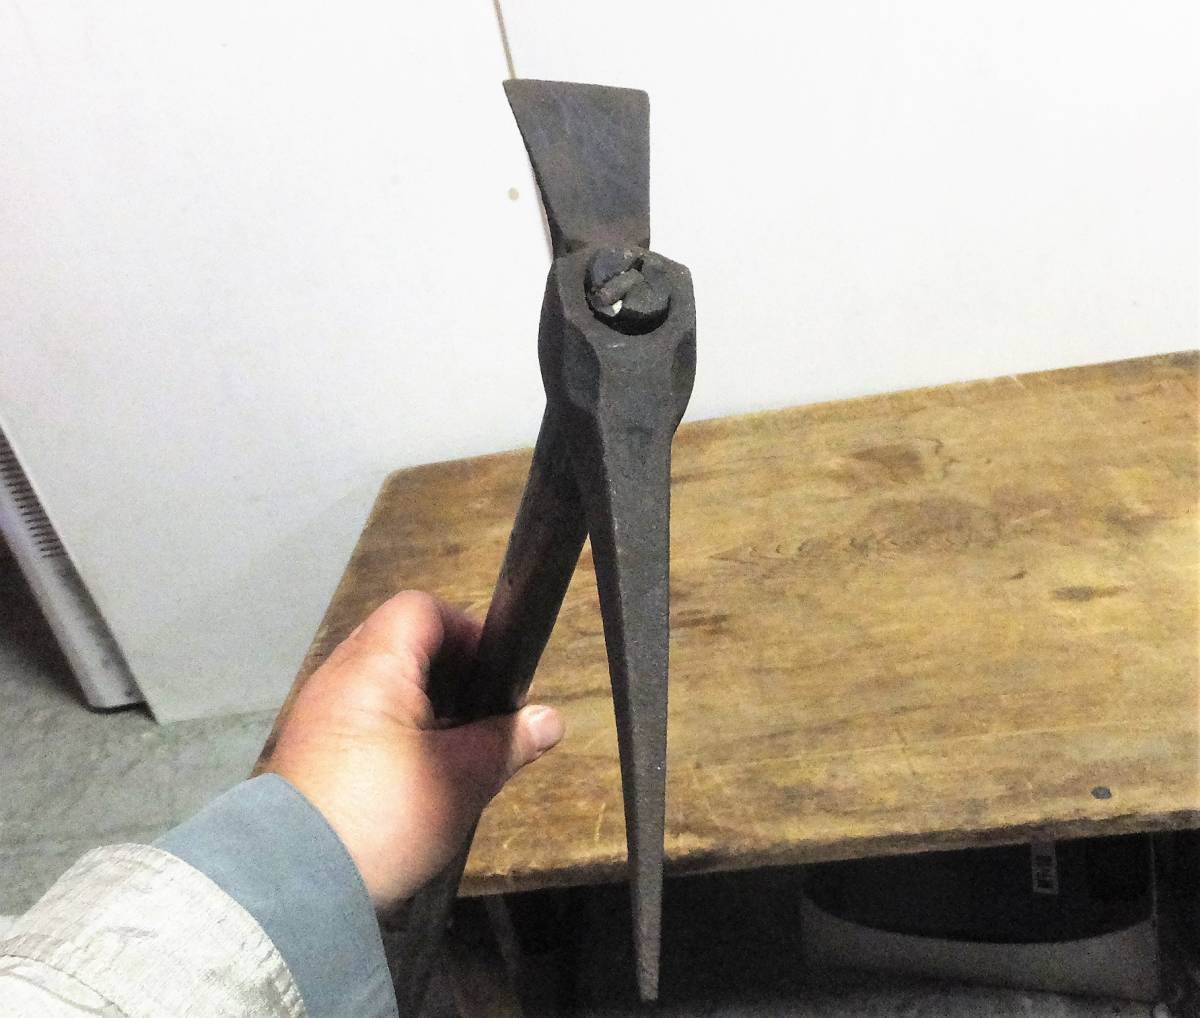 ^.-85 ледоруб старый . товар времена предмет tsuru - si альпинизм инструмент уличный длина 97cm самая большая ширина 4cm глубина 24cm вес 820g